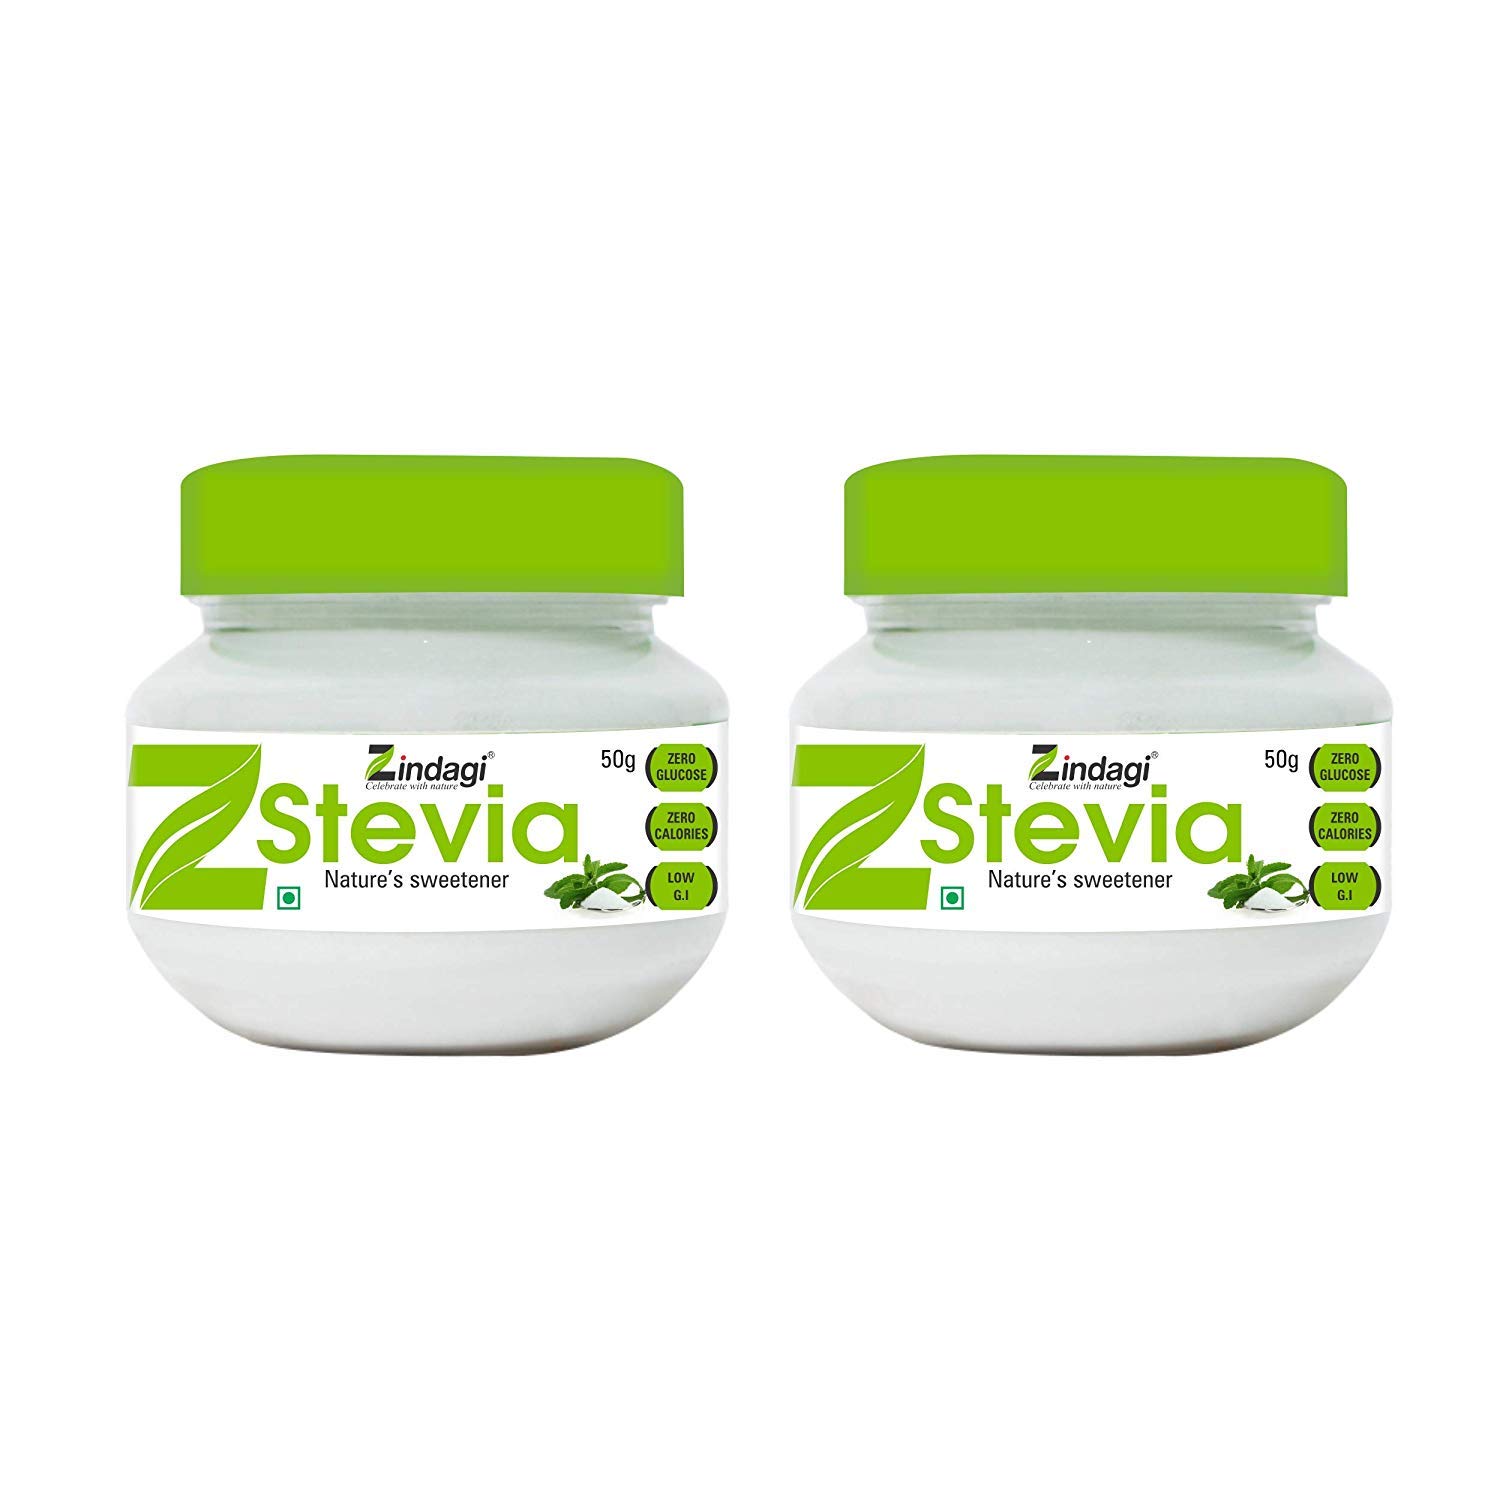 Buy Zindagi Stevia Powder - Fat-Free Sweetener - Natural Stevia Sugar-Free,50 Gm(Pack of 2) at Best Price Online